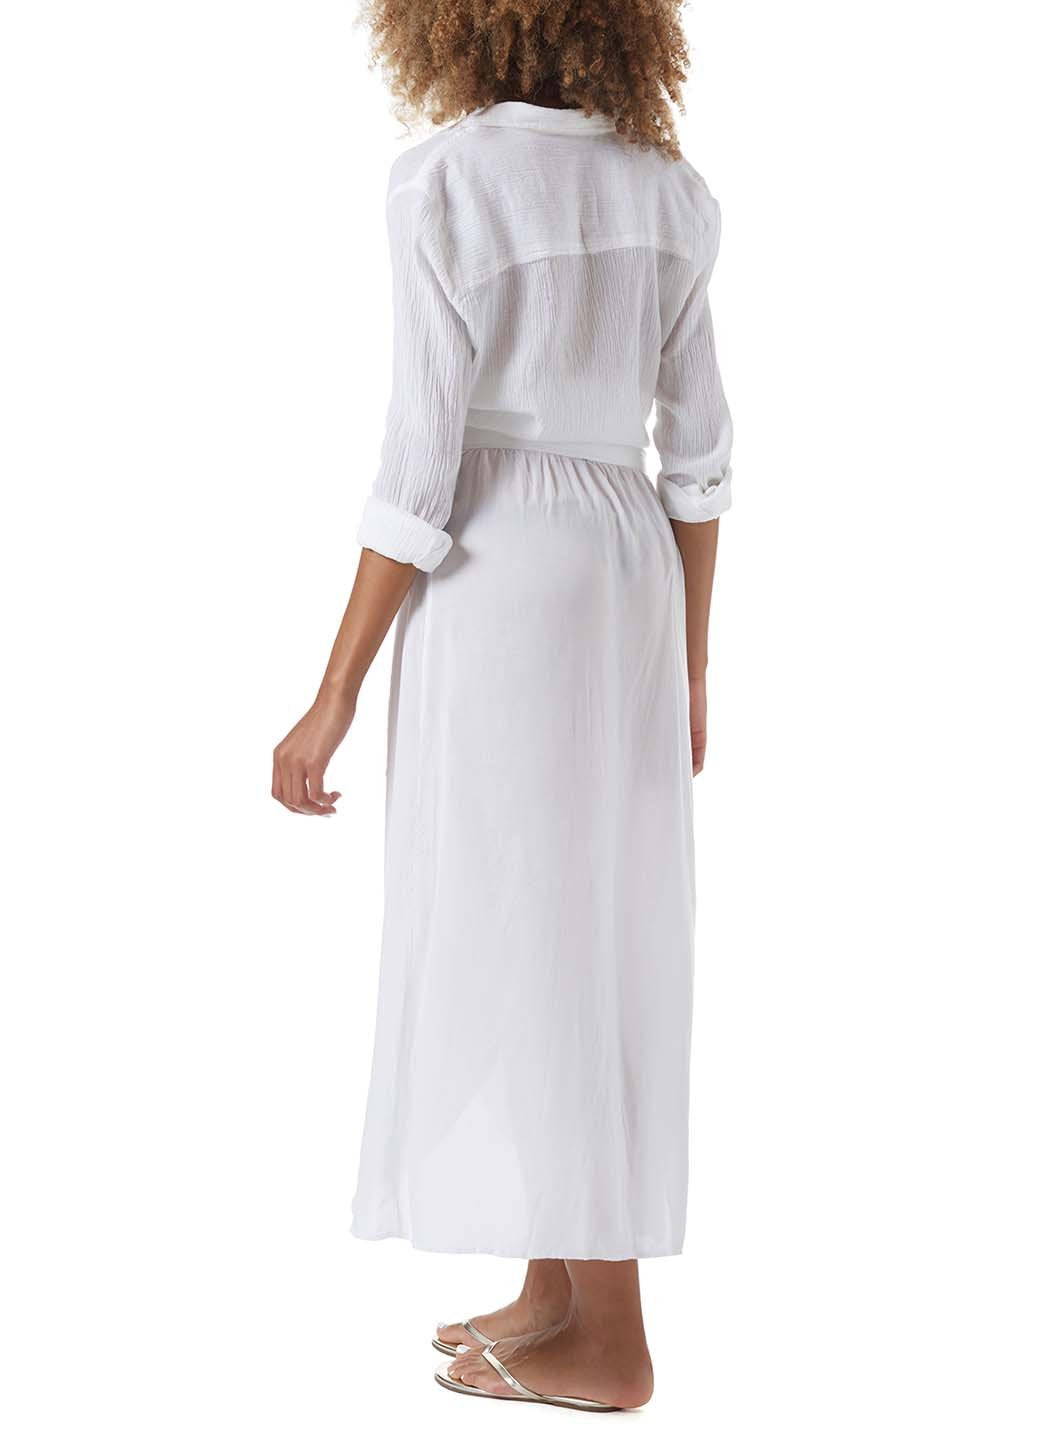 Melissa Odabash Devlin White Wrap Skirt | Official Website